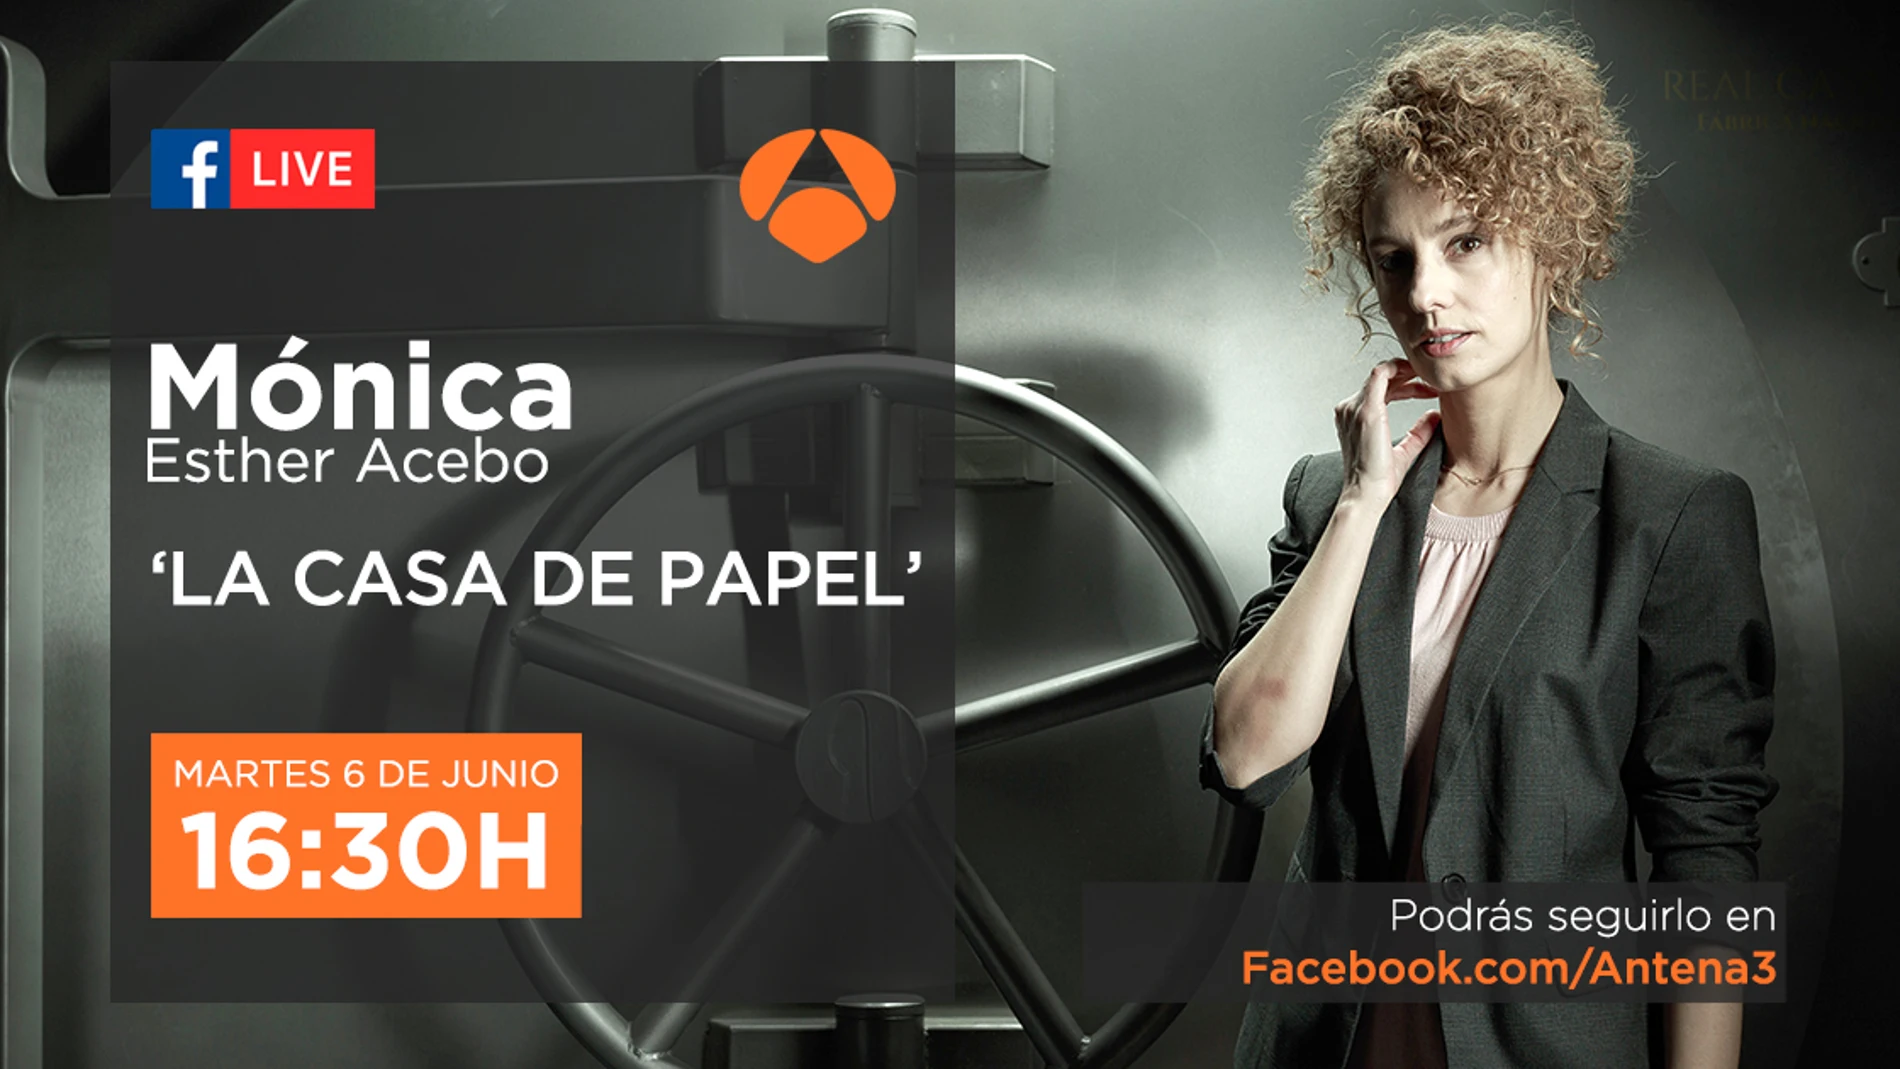 Tienes una cita con Esther Acebo, Mónica en 'La casa de papel', en directo en Facebook Live